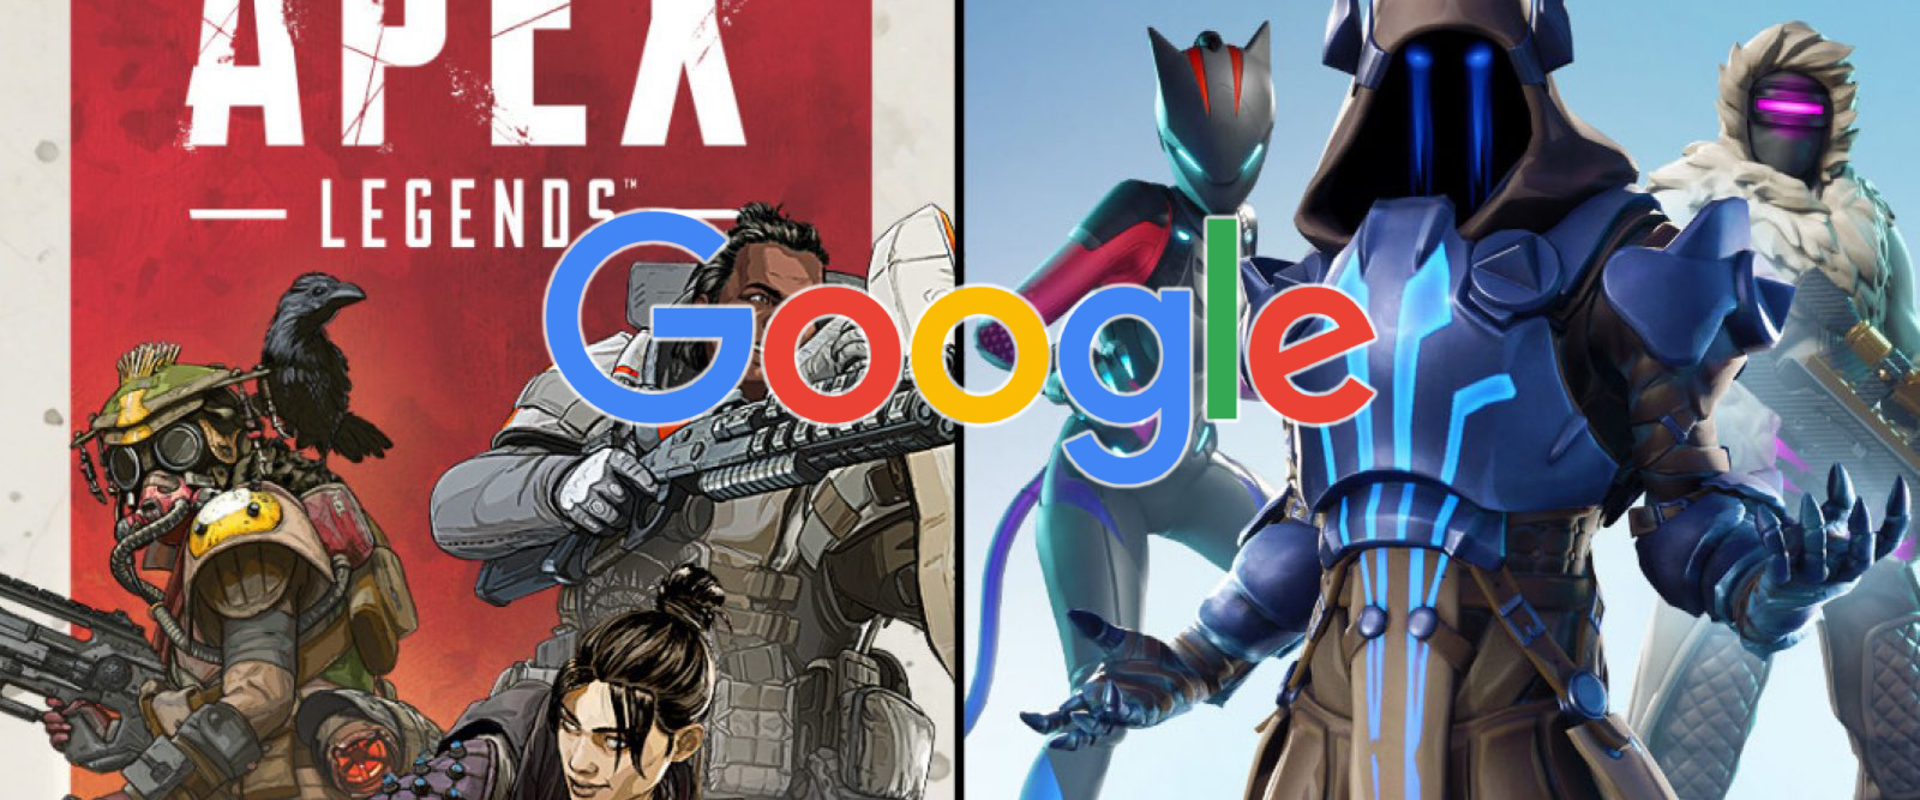 Már a Google keresőjében is a Fortnite bukkan fel, ha rákeresünk az Apex Legends-re